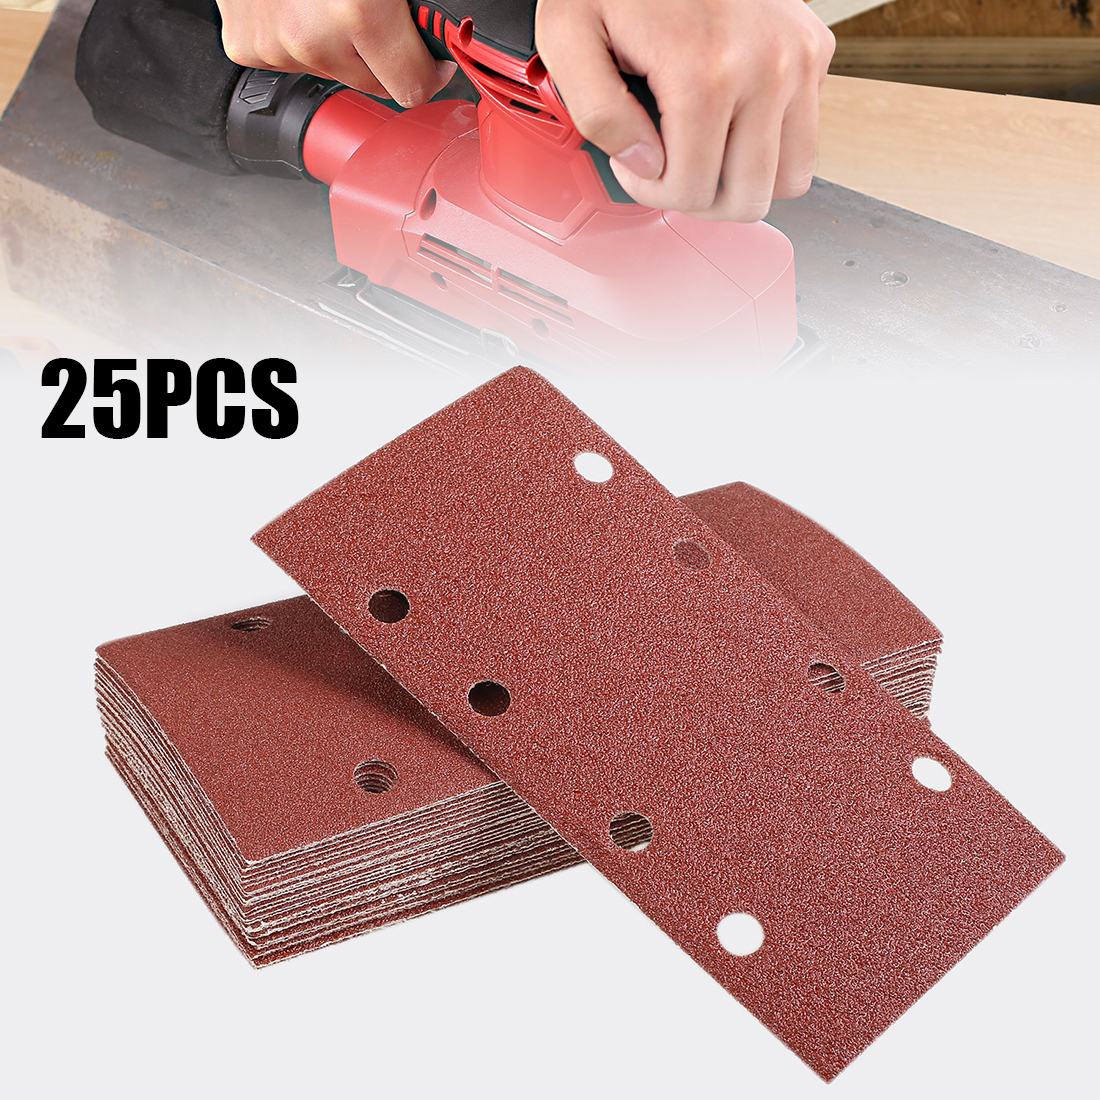 25pcs Sandpaper Square Sander Hook Loop Sand Paper Sanding Disc Sheets Abrasive Tools For Orbital Polishing 40/60/80/120 Grit